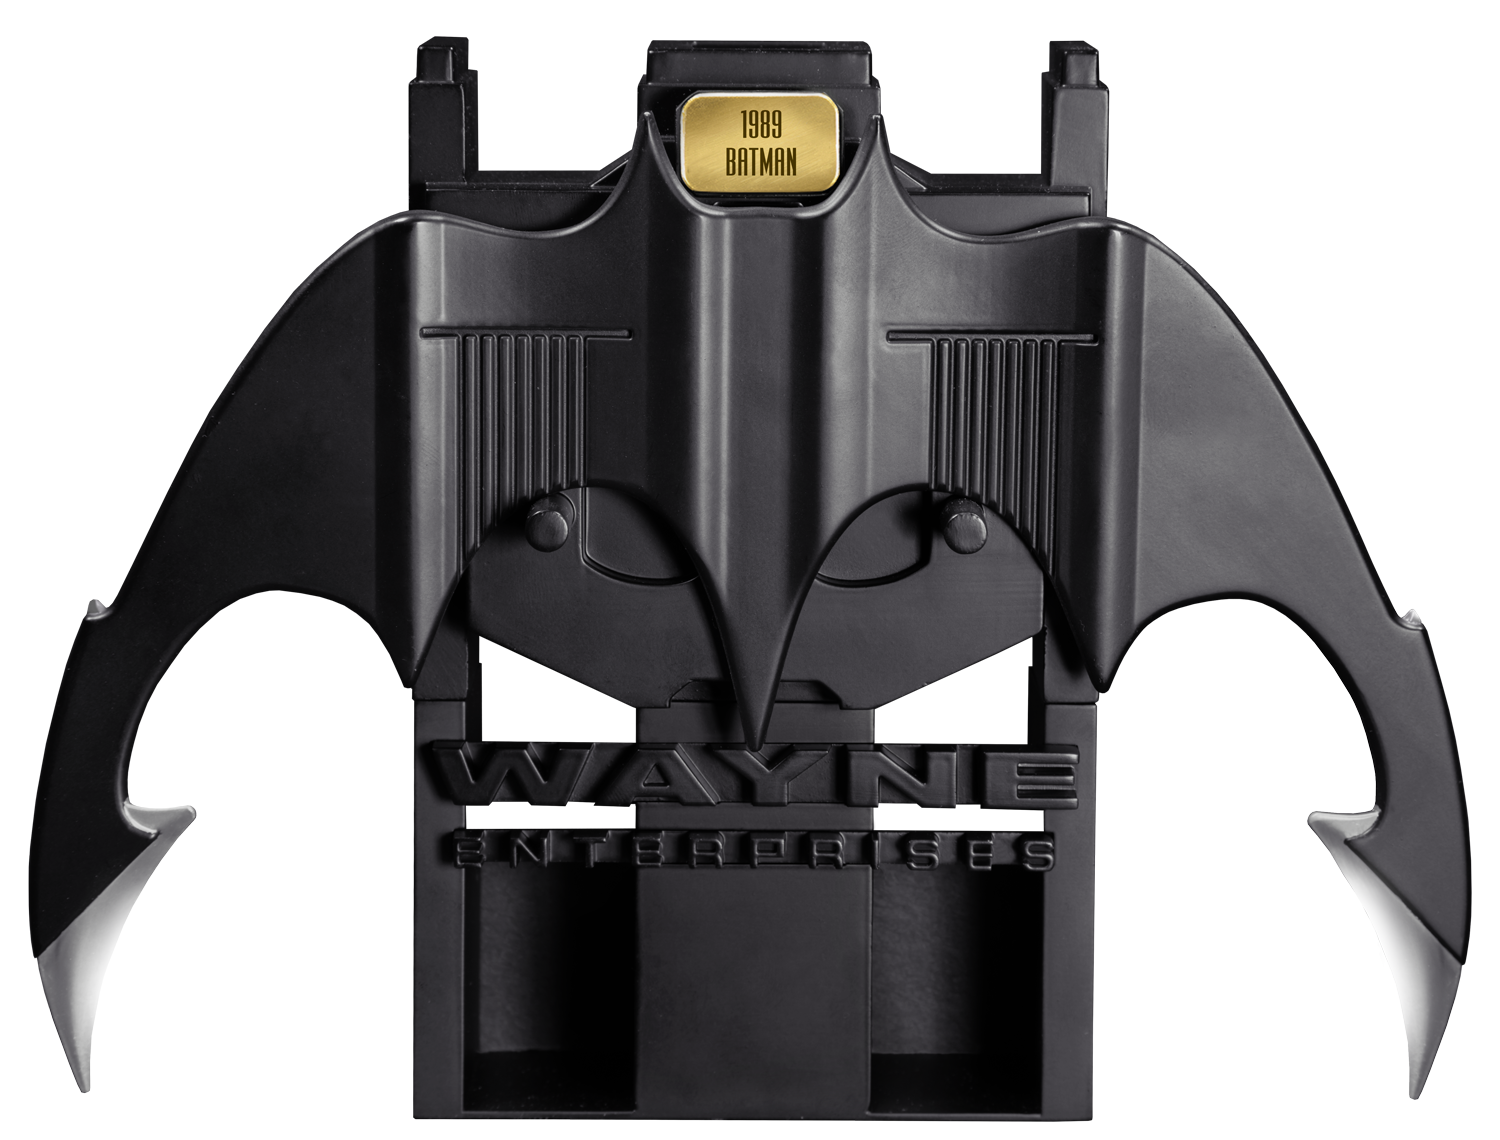 Batman-1989-Batarang-Replica-002.png